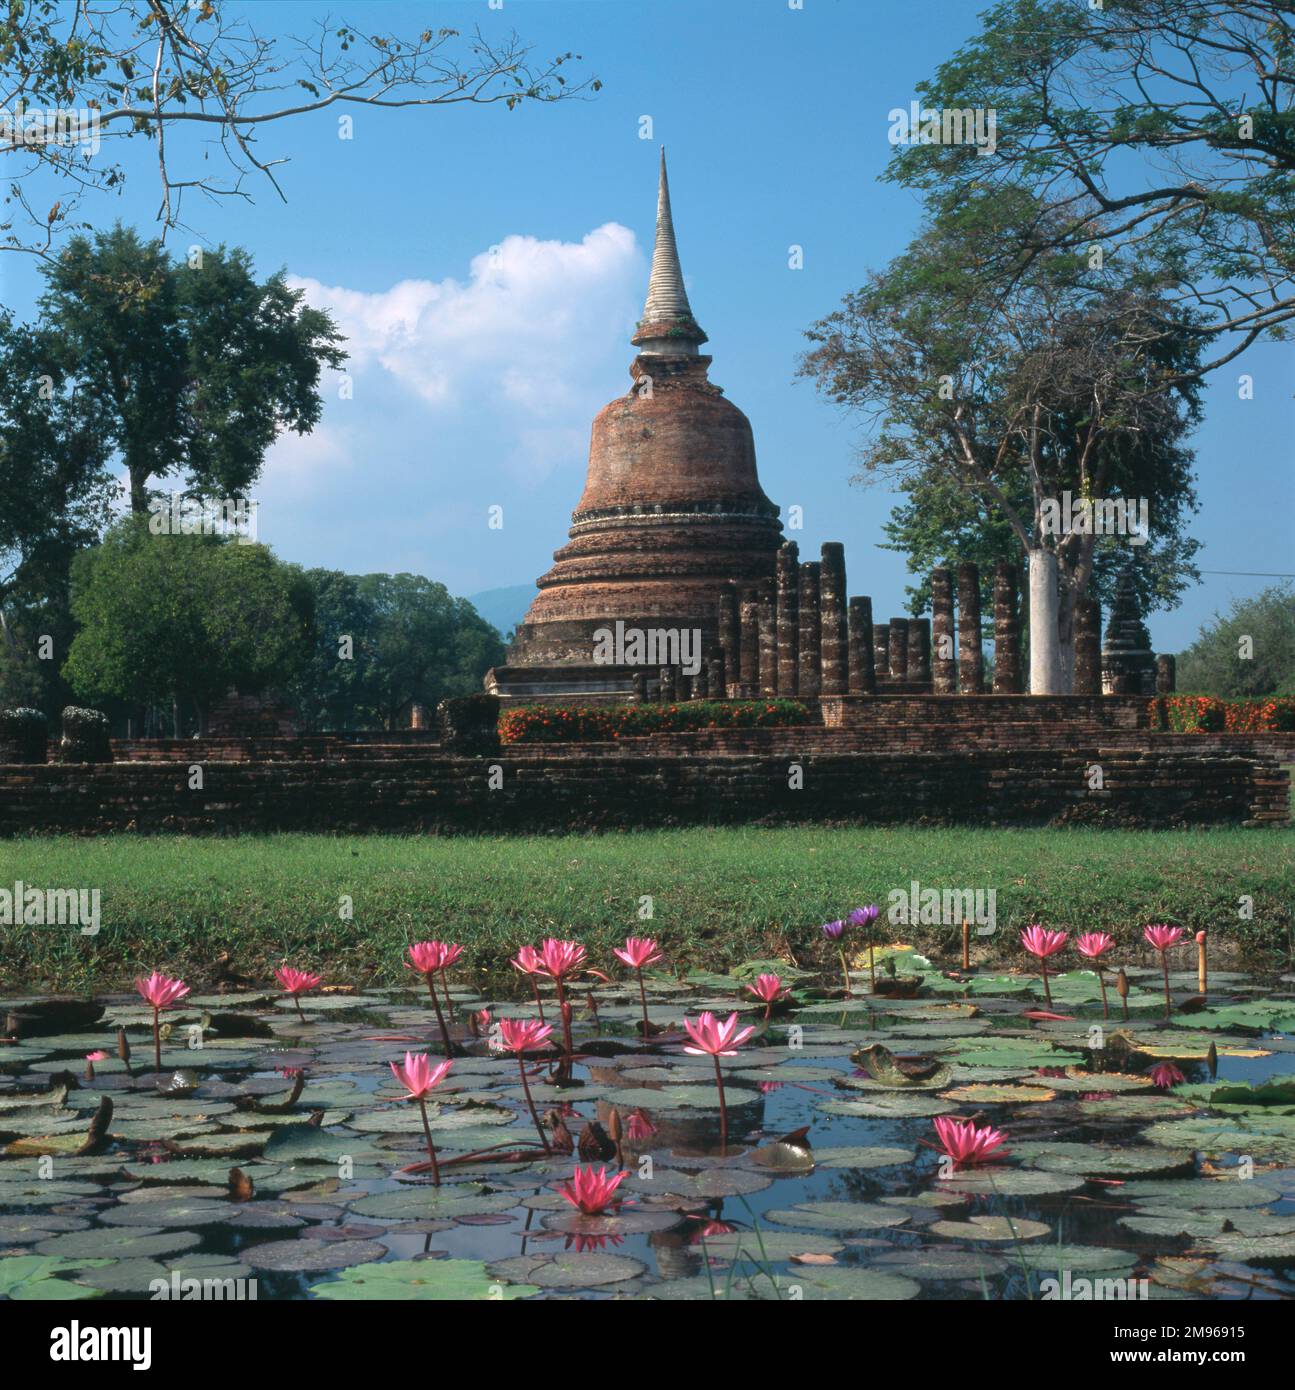 Le temple bouddhiste Wat Chana Songkhram à Old Sukhothai, Thaïlande. Le chedi (tombeau) en forme de cloche est de style cinghalais. Vue sur un étang aux nénuphars aux fleurs roses en fleur. Banque D'Images